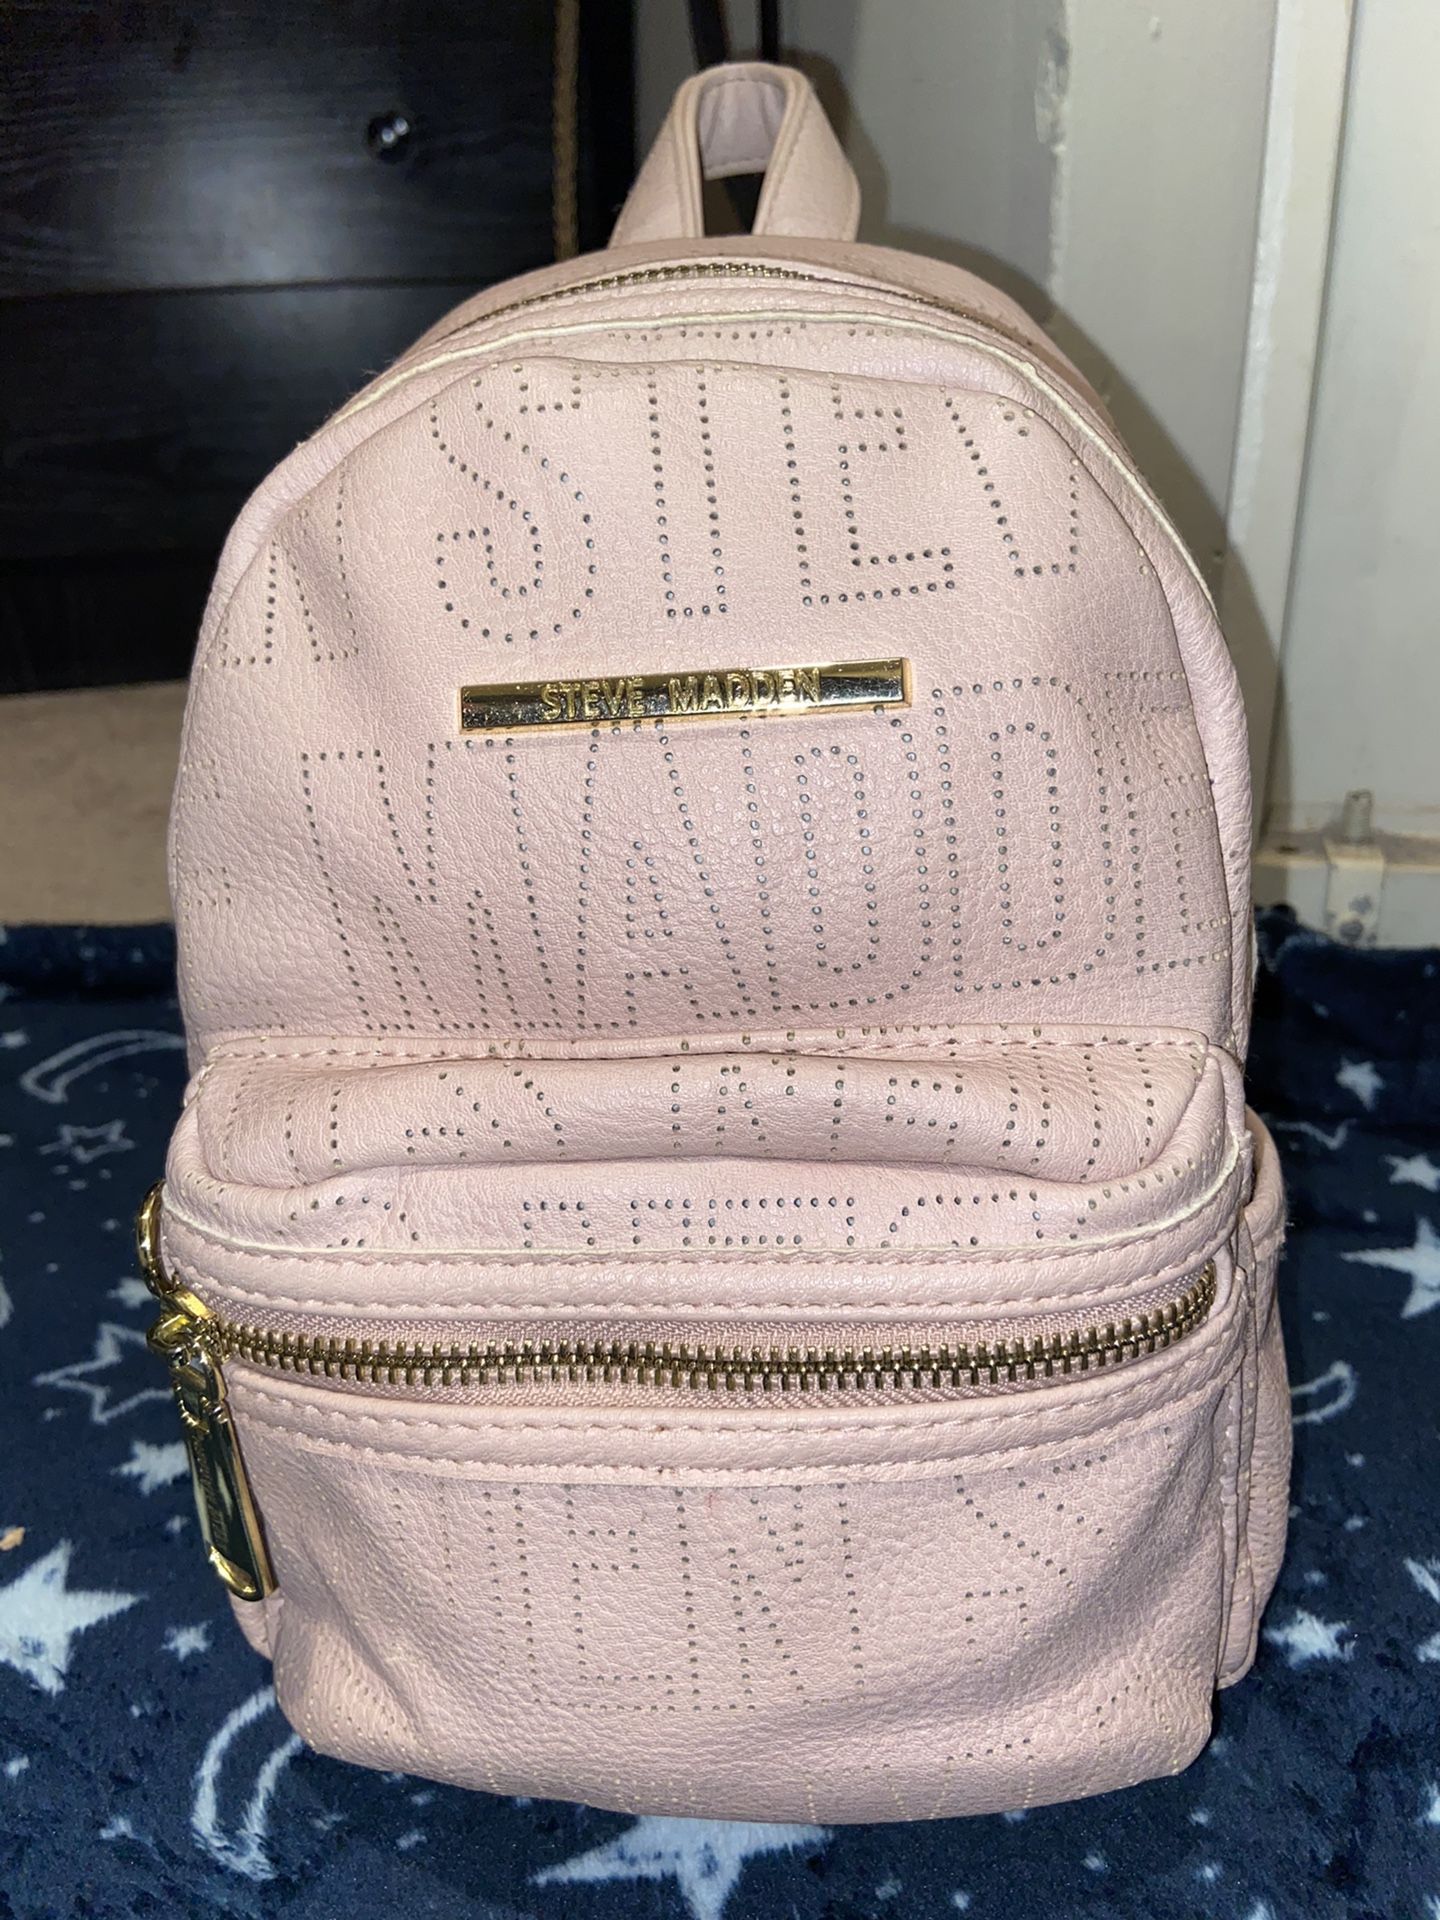 Steve Madden pink Backpack Purse